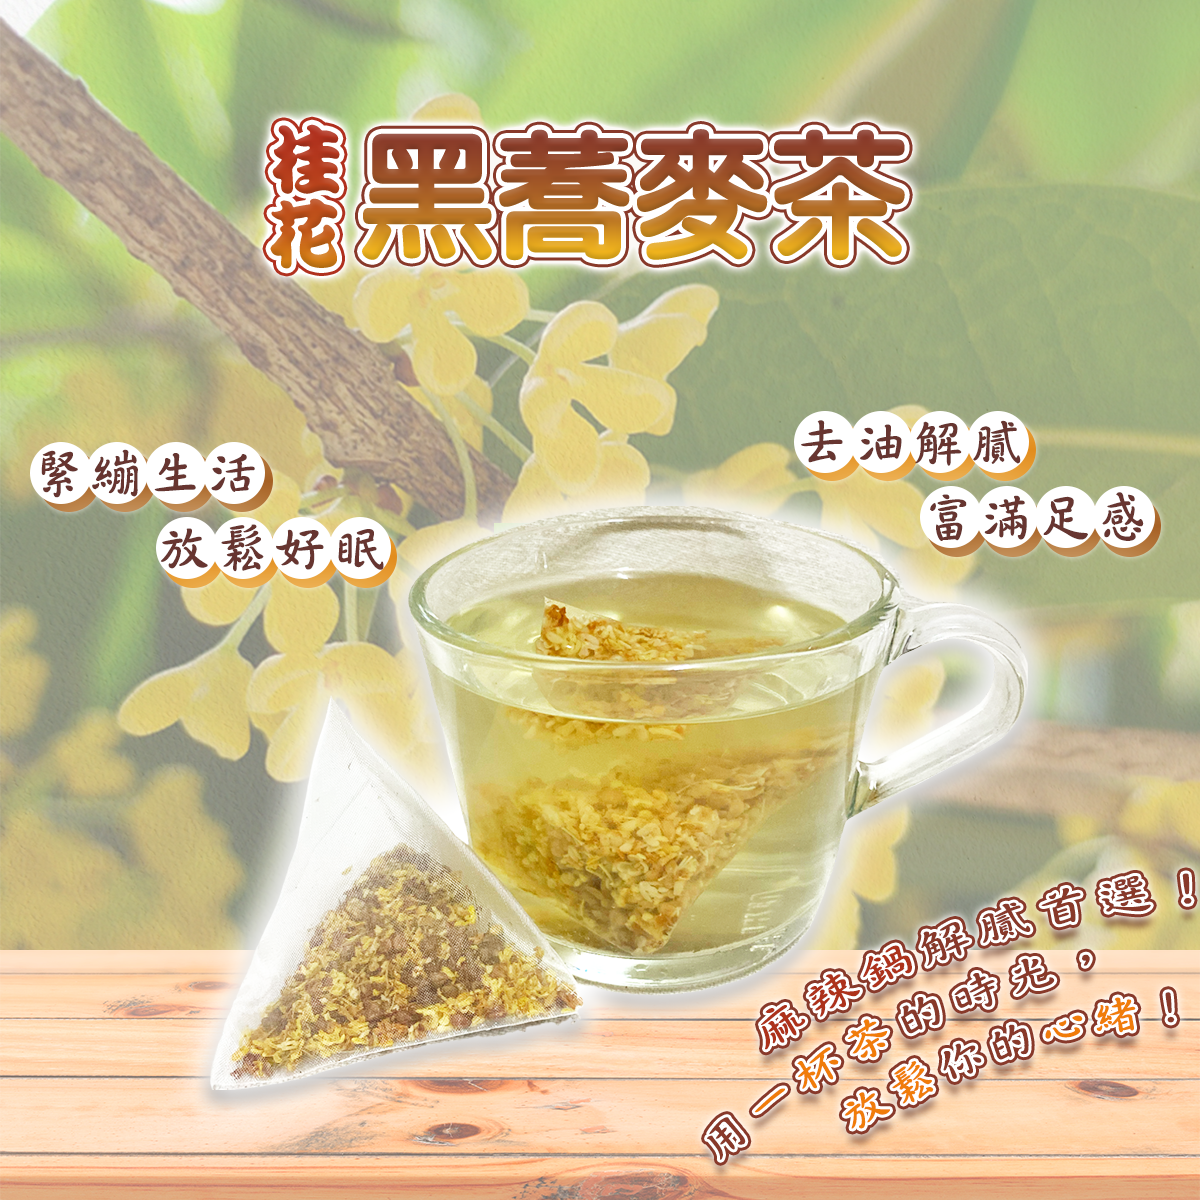 【蔘大王】桂花黑蕎麥茶 去油解膩 放鬆入睡 黃金蕎麥再升級 滿滿6g真夠味